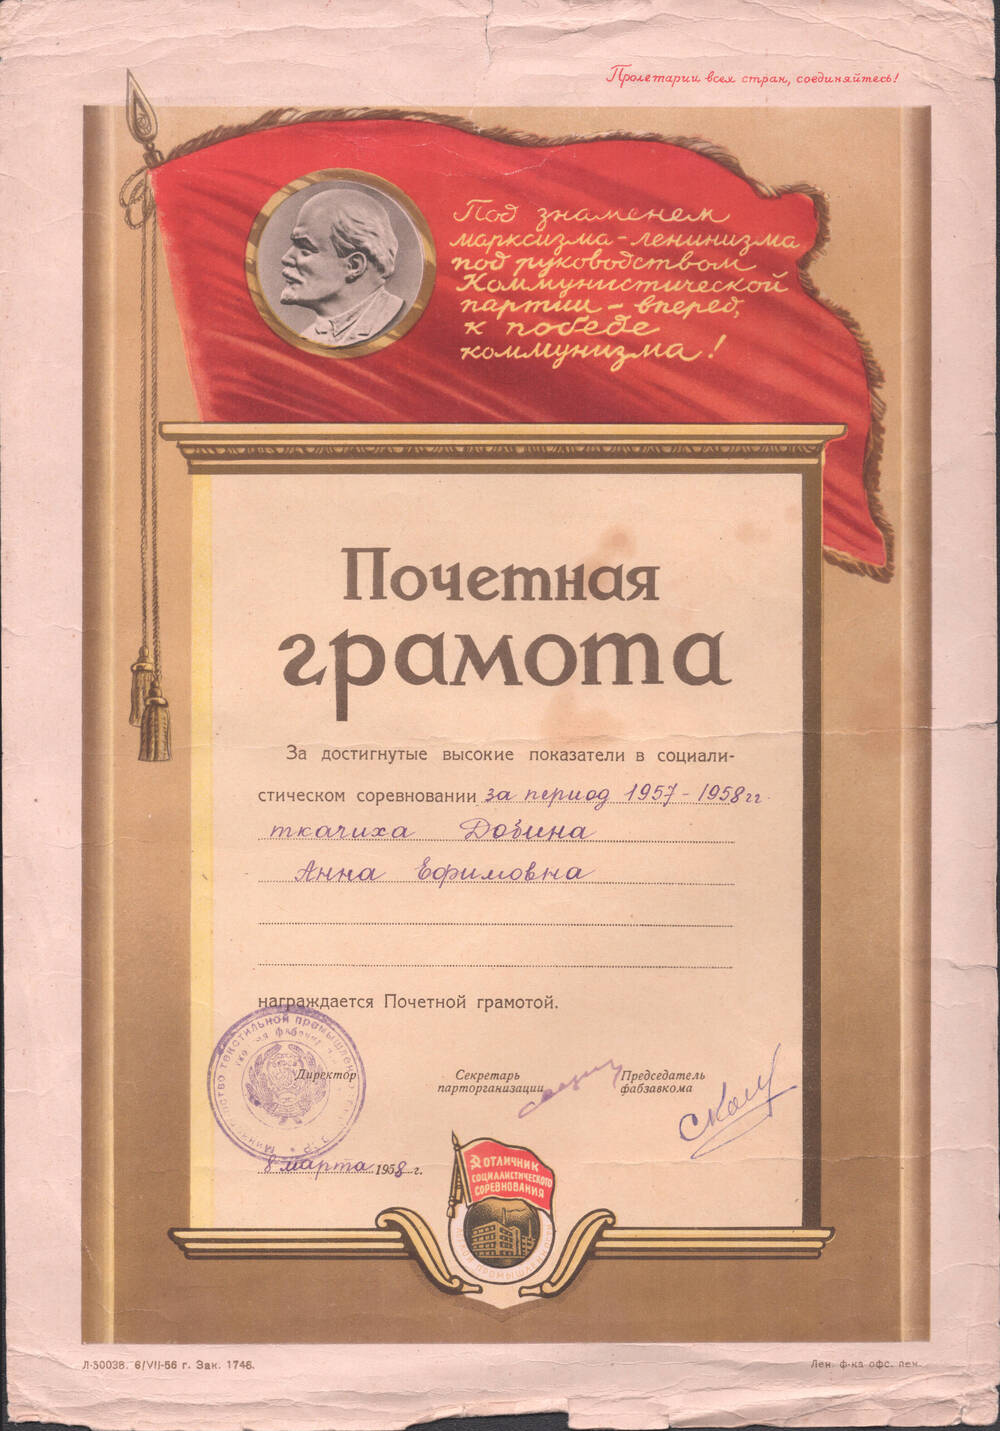 Почетная грамота Добиной А.Е. за высокие показатели в социалистическом соревновании в 1957-1958 г.г.